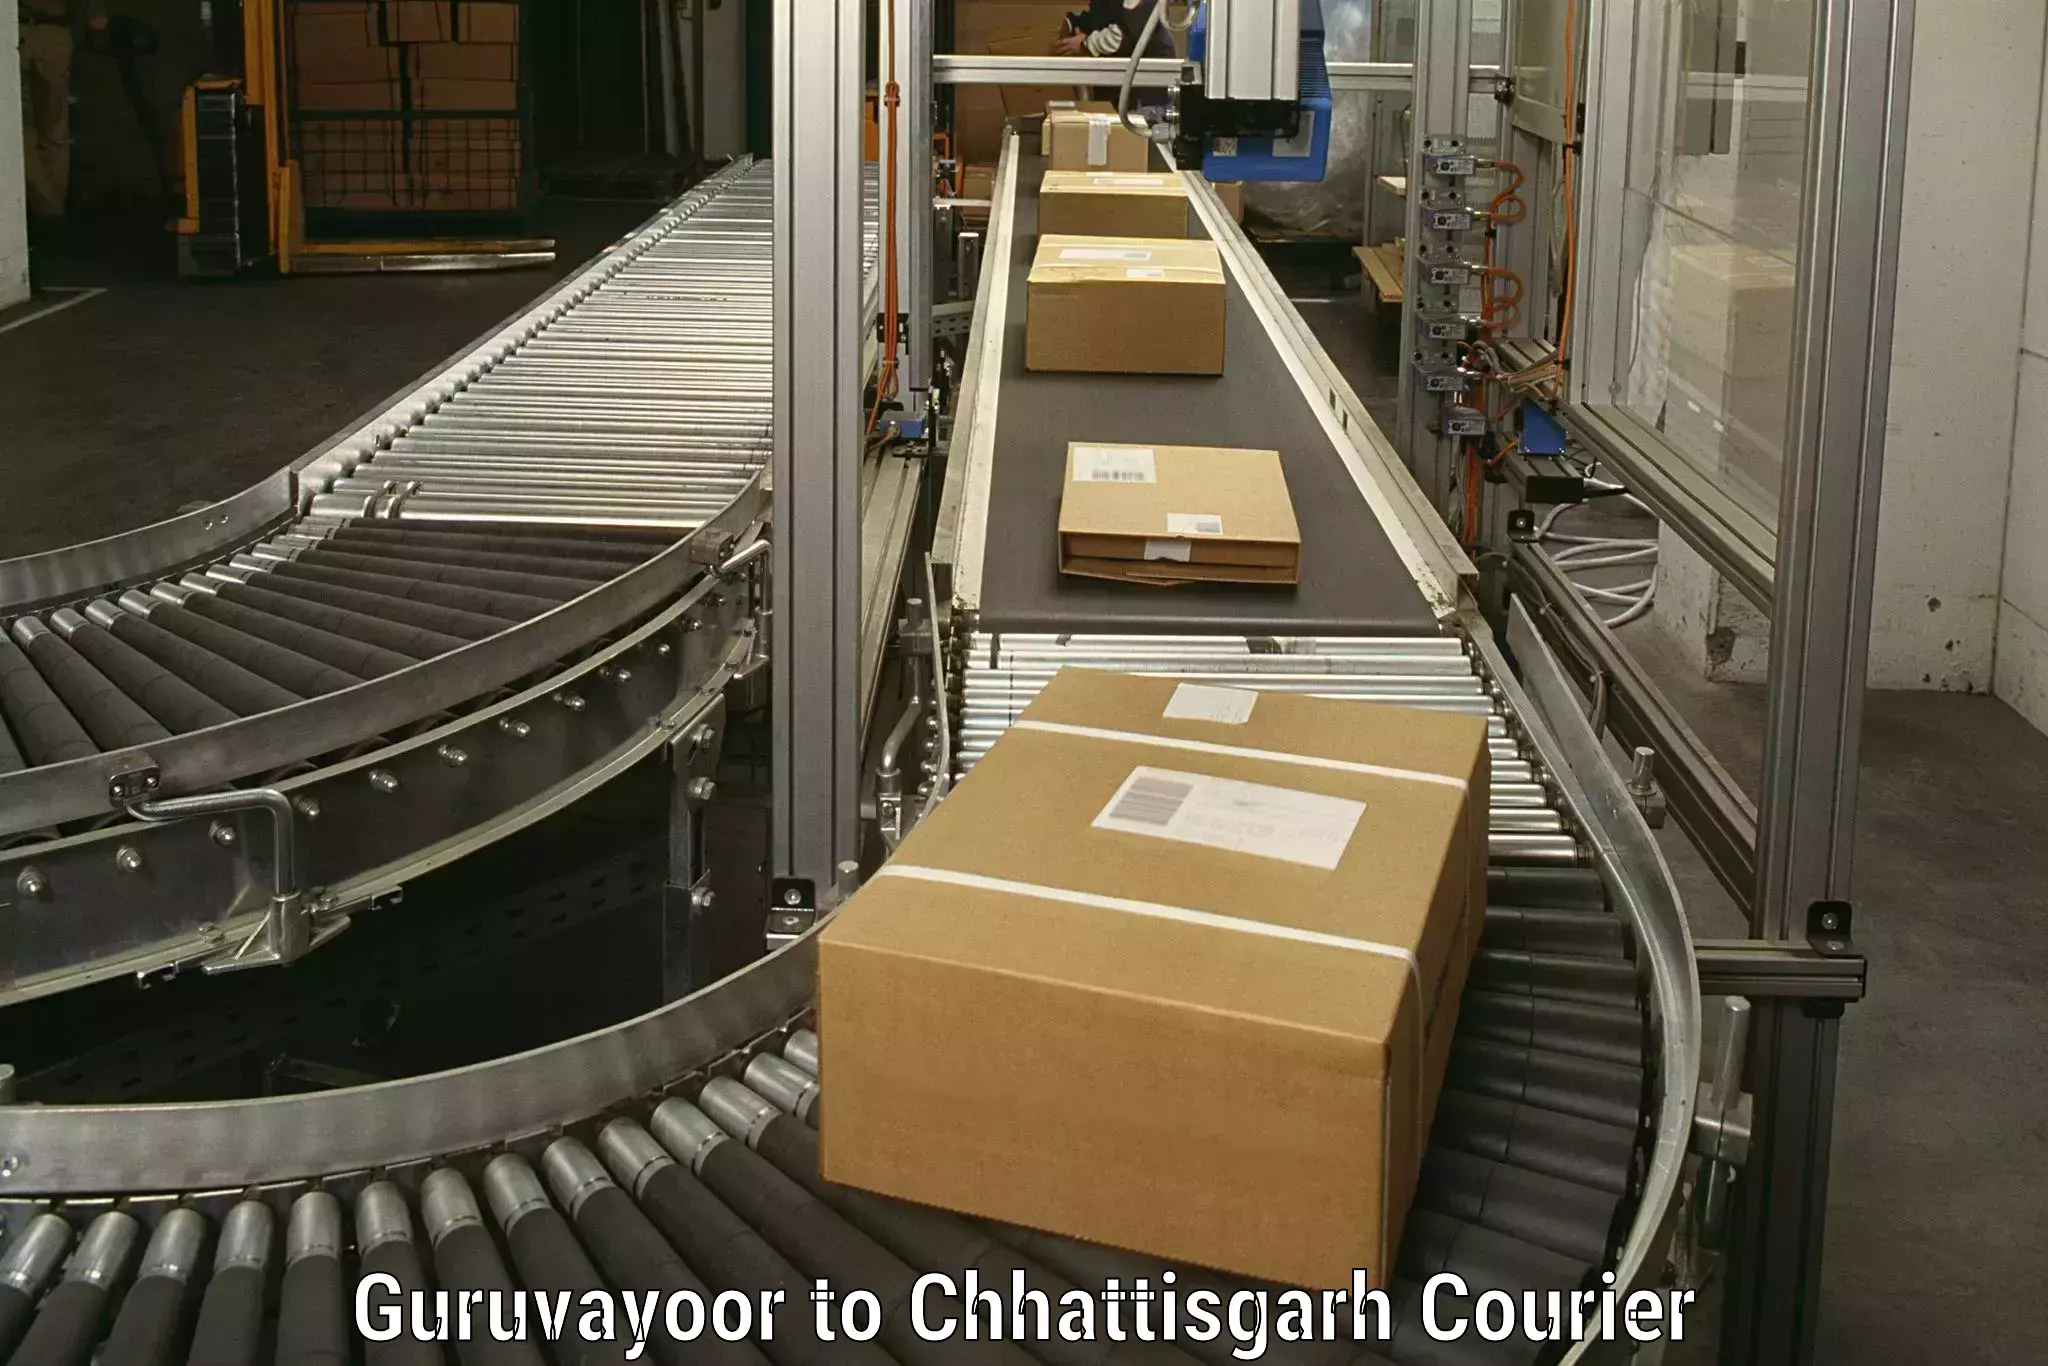 Furniture transport company Guruvayoor to Patna Chhattisgarh